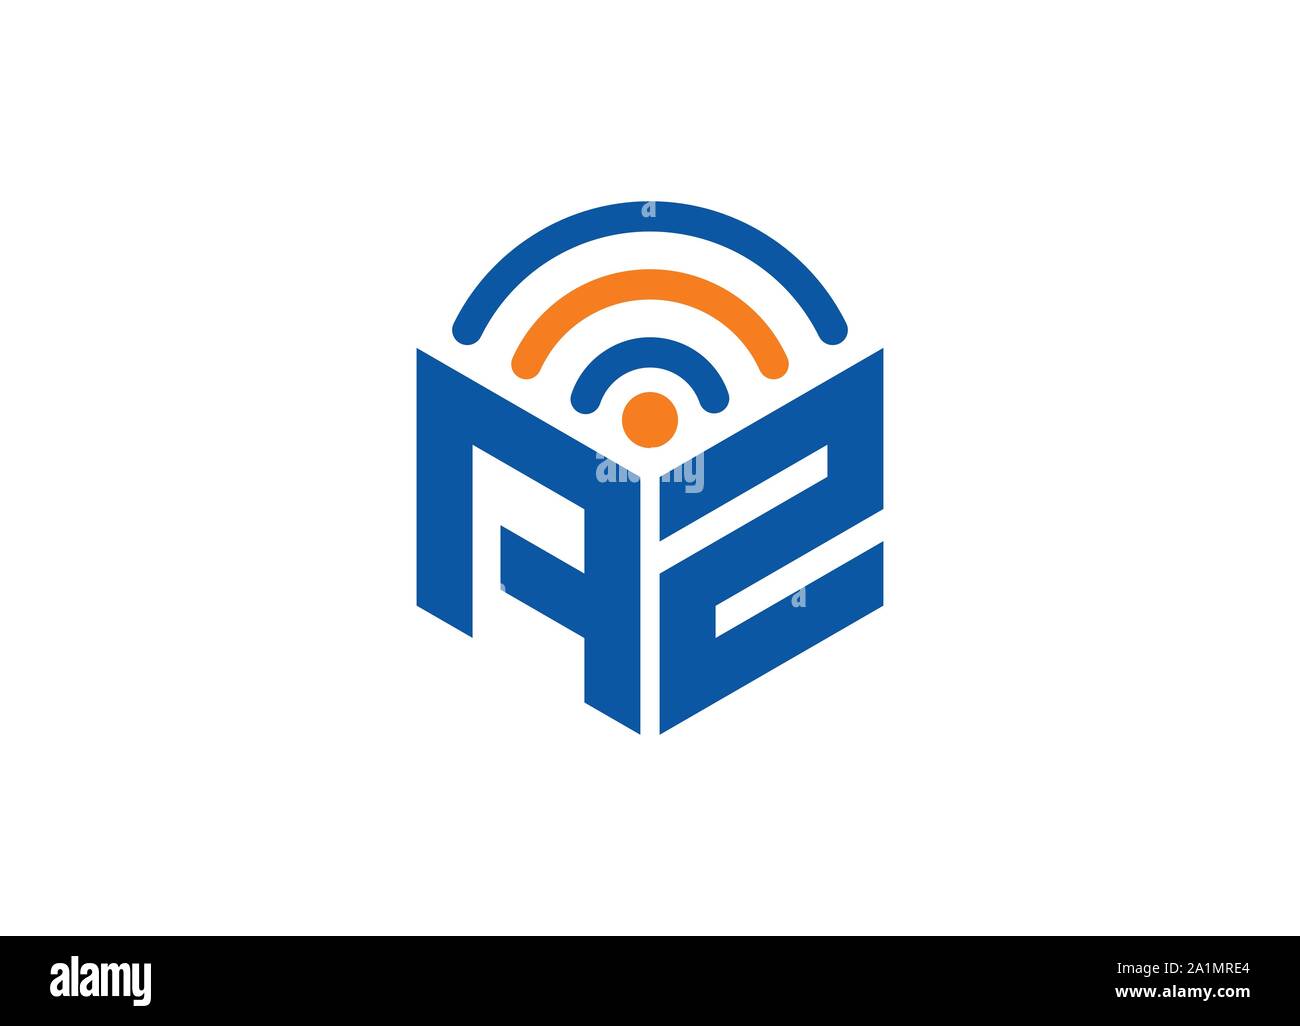 Résumé Lettre polygonal, Logo logo lettre hexagonale, polygonale Lettre avec logo WiFi chanter et symbole, un monogramme logo, conception de logo WiFi Illustration de Vecteur